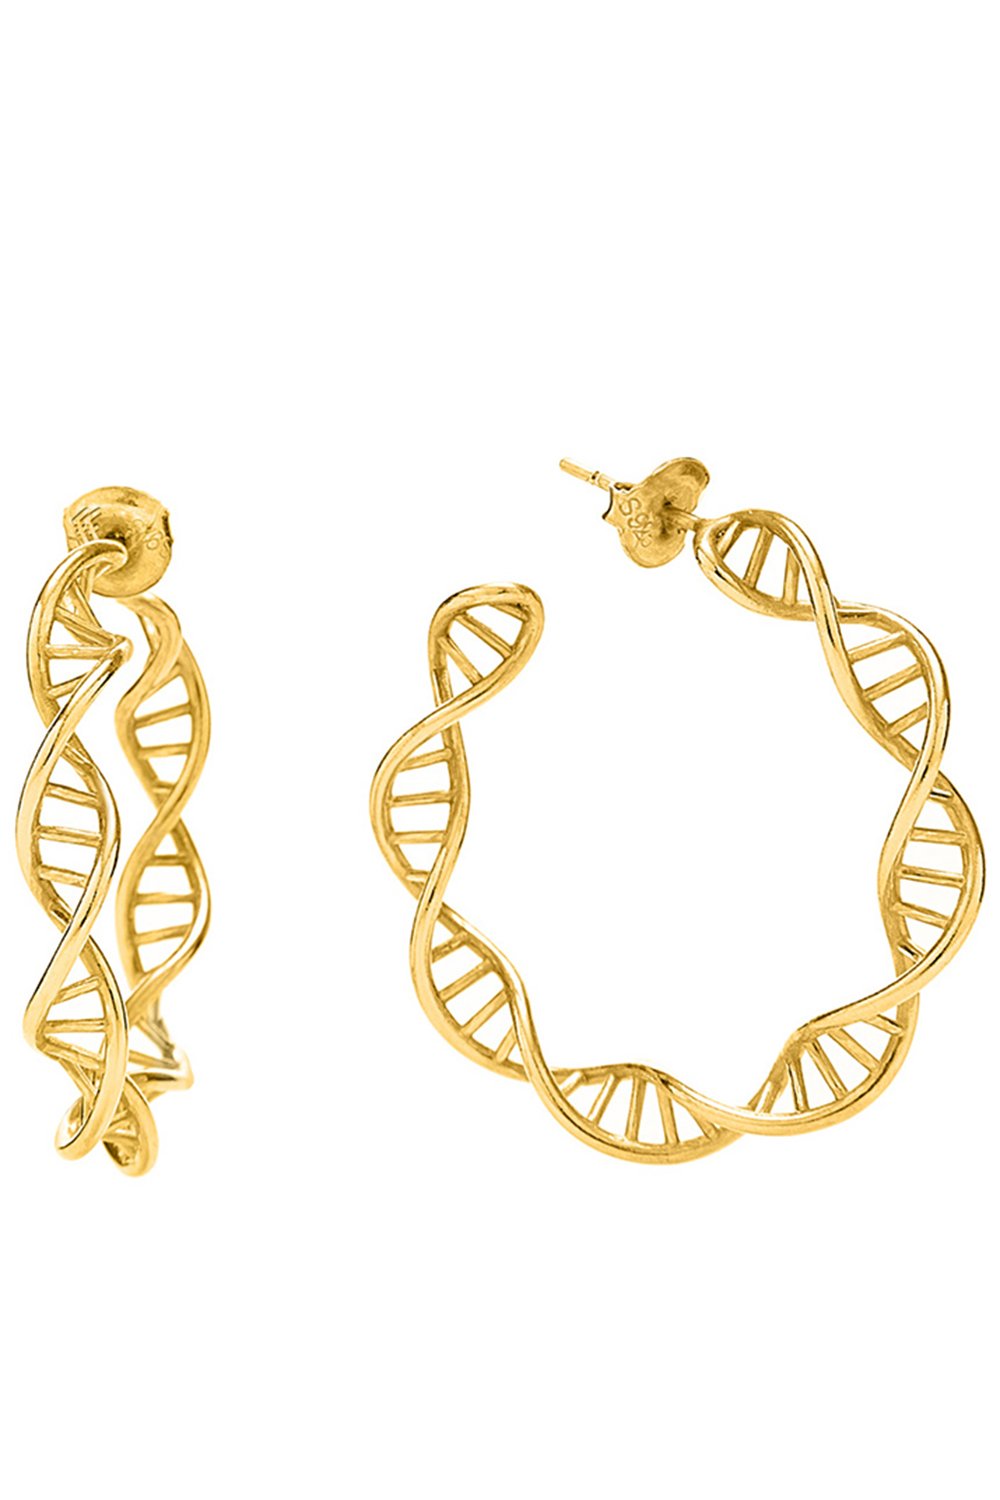 Γυναικεία/Αξεσουάρ/Κοσμήματα/Σκουλαρίκια FOLLI FOLLIE - Γυναικεία ασημένια σκουλαρίκια FOLLI FOLLIE STYLE DNA χρυσά